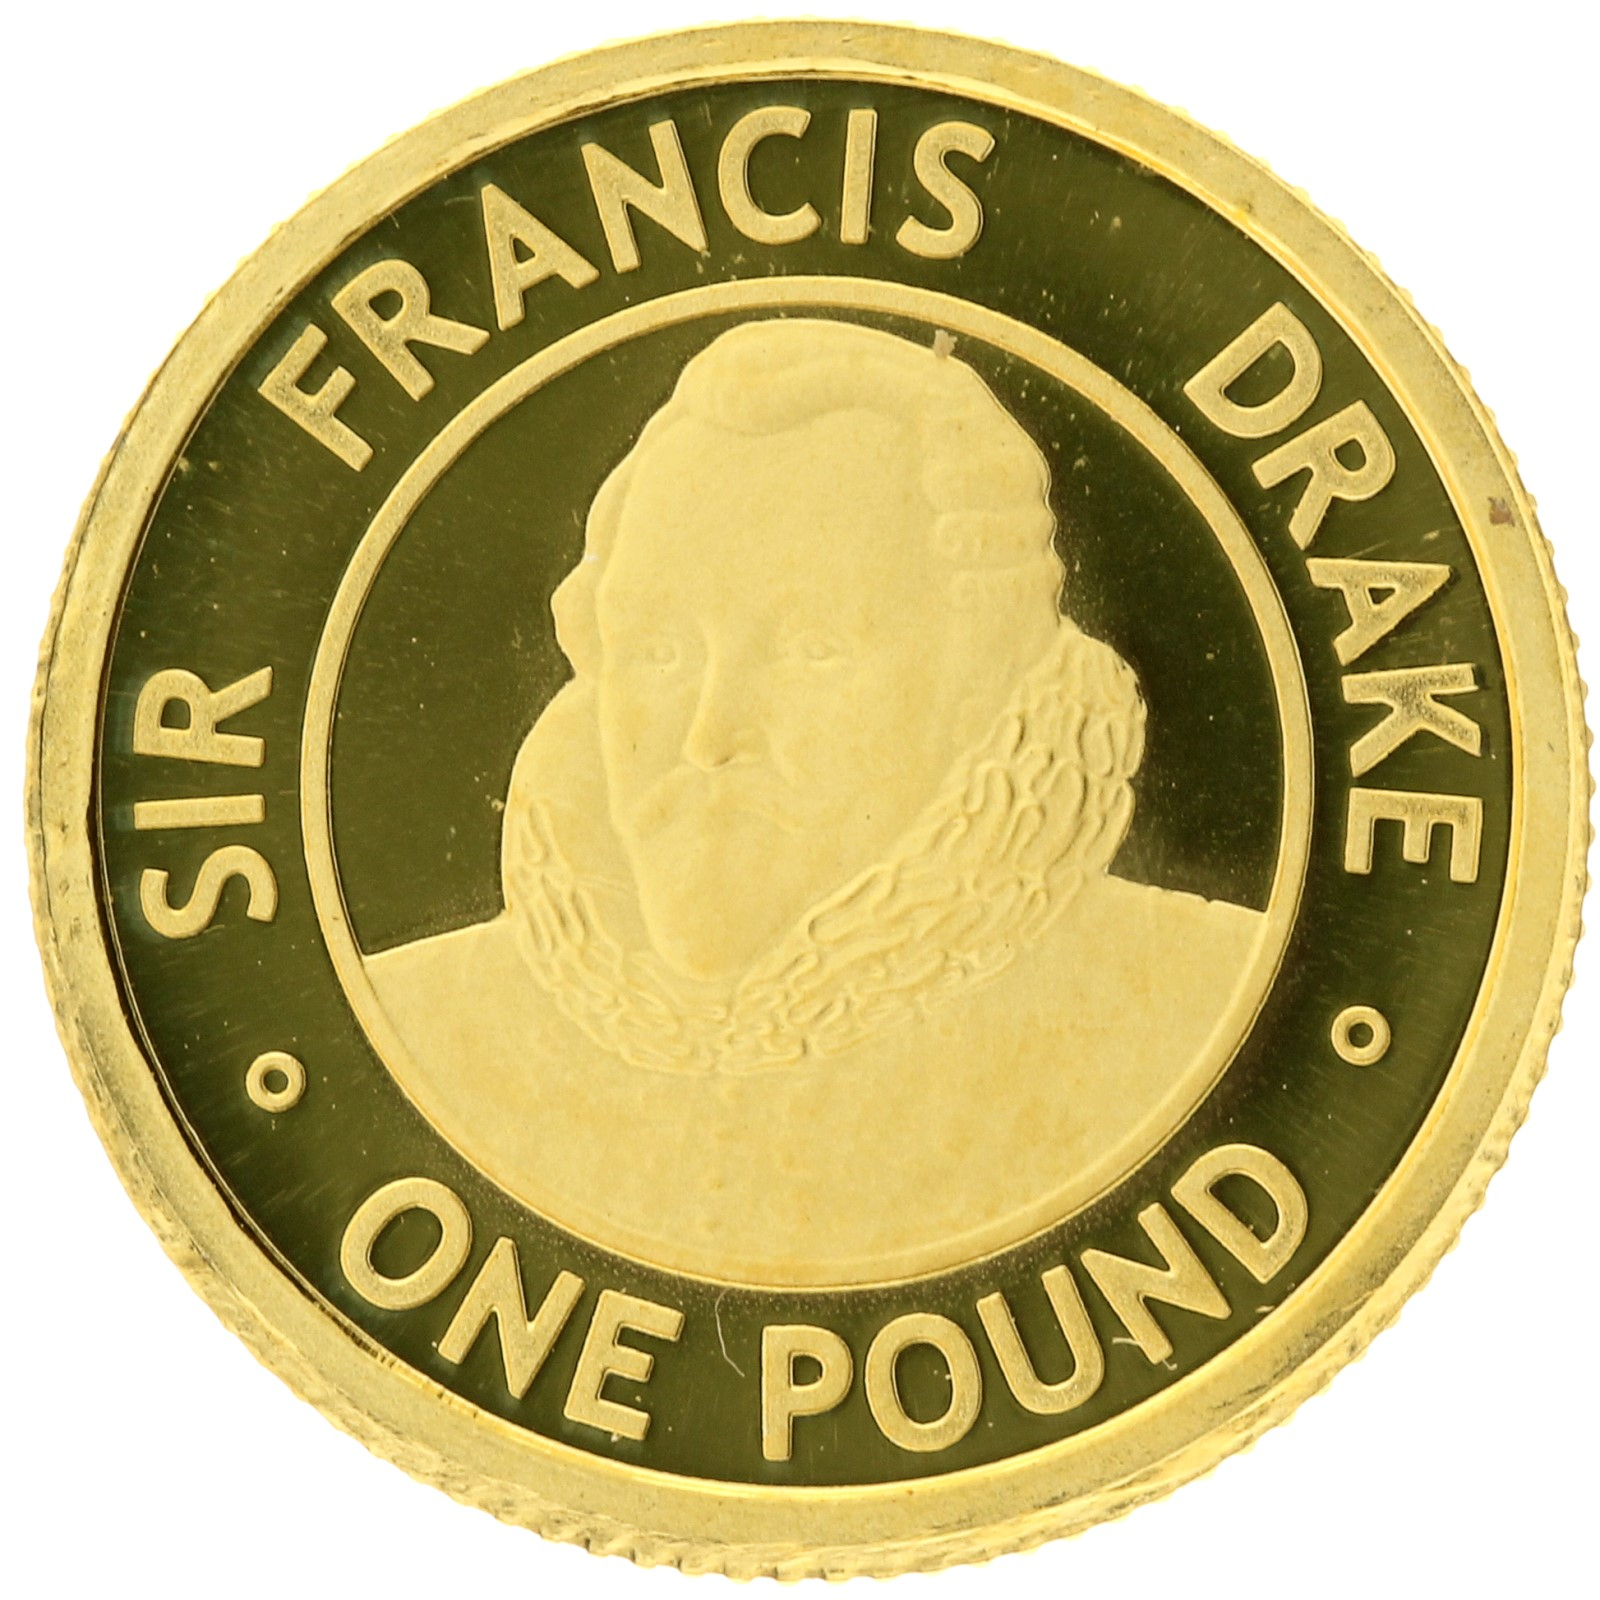 Alderney - 1 pound - 2008 - Sir Francis Drake - 1/25oz